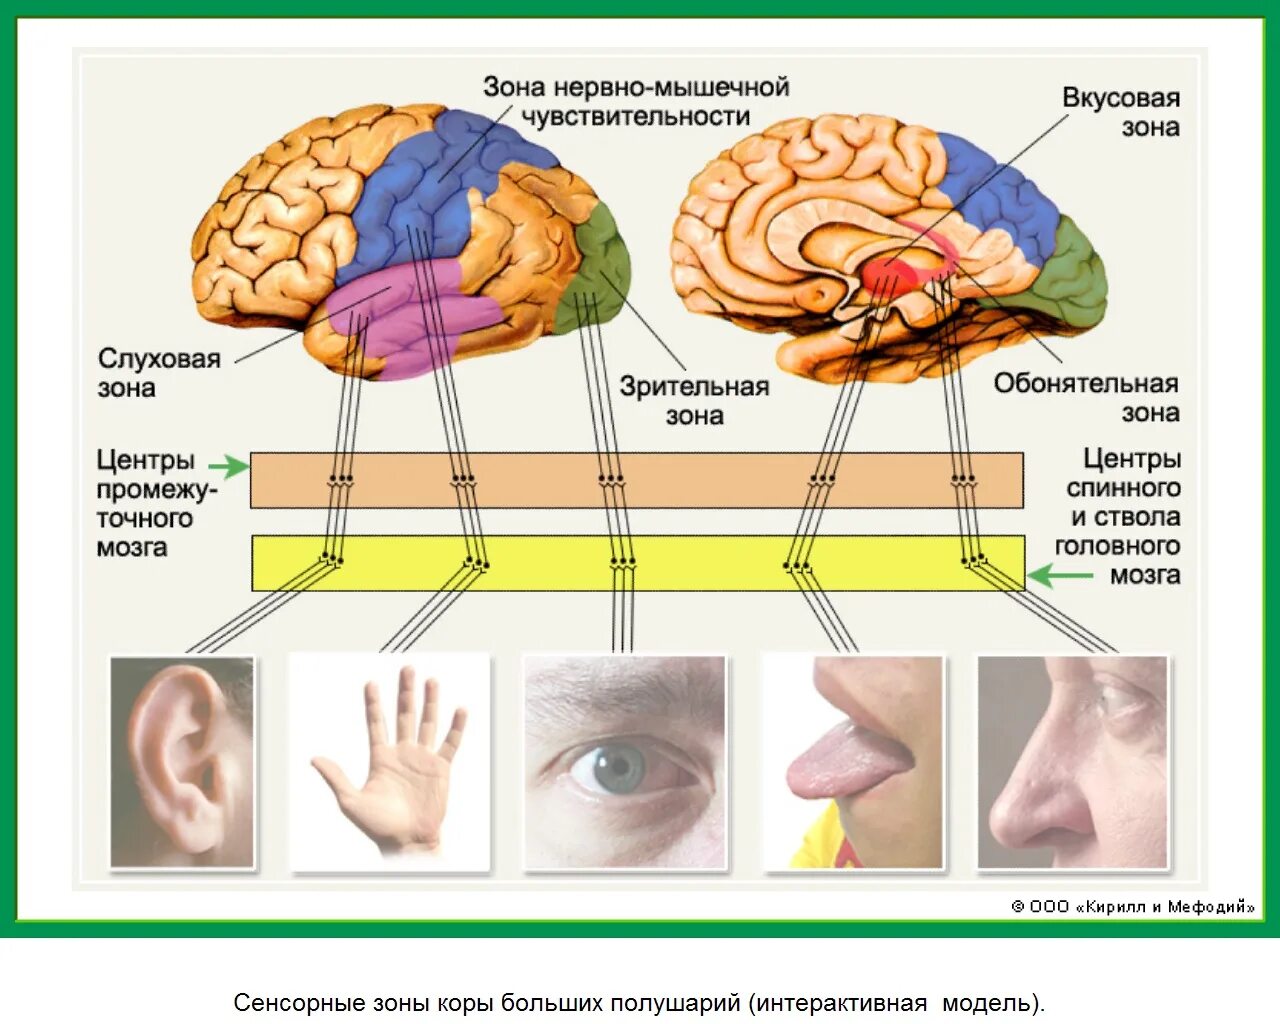 Часто ли при коммуникациях используются обонятельный вкусовой. Анализаторы слуховой зрительный вкусовой обонятельный и тактильный. Слуховой анализатор орган чувств и рецепторы. Зоны мозга отвечающие за органы чувств. Строение анализатора мышечной чувствительности.